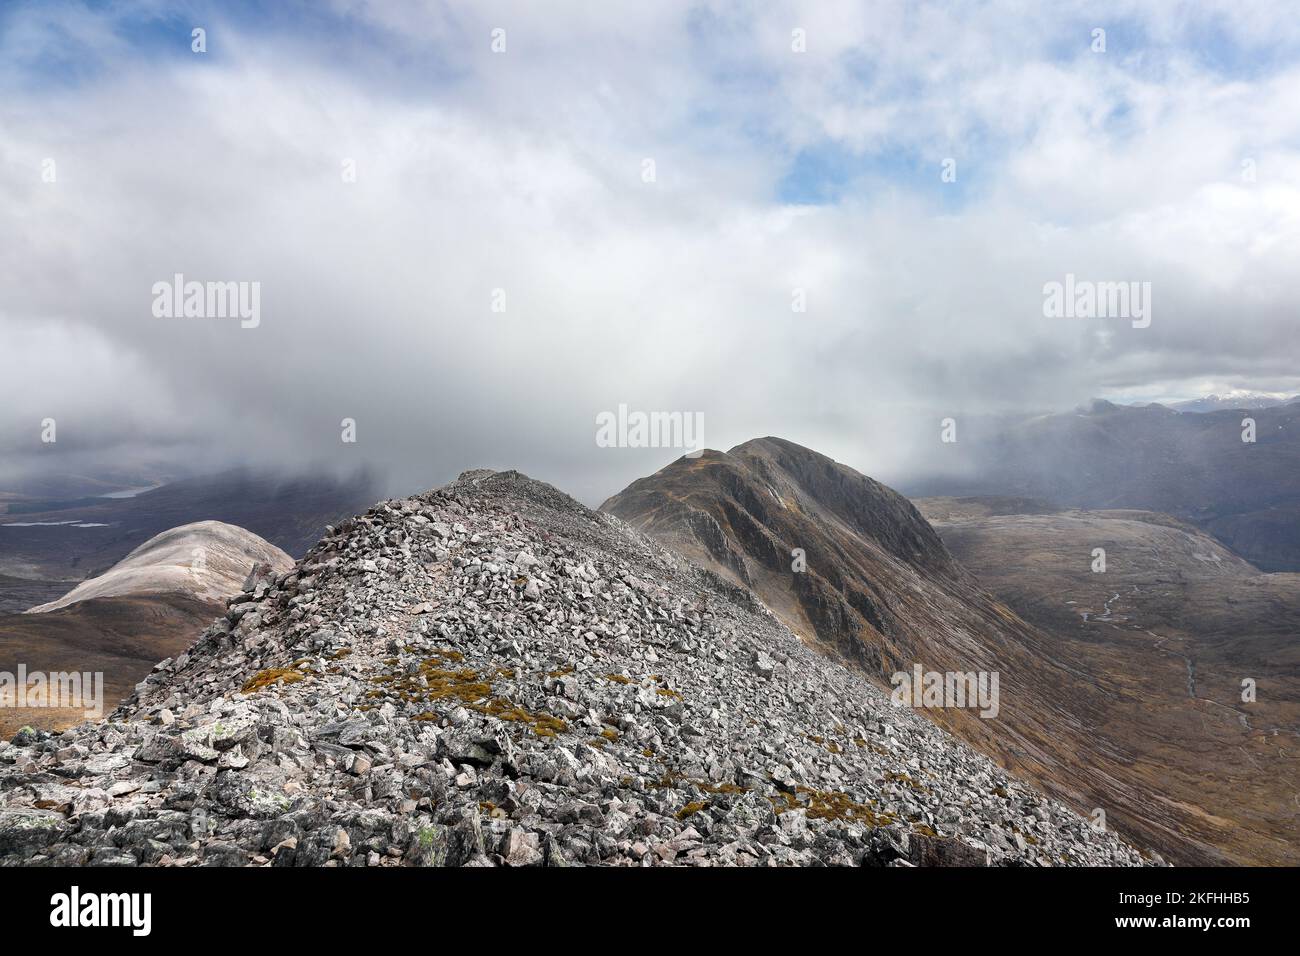 La montagna di Beinn Liath Mhor come una doccia di neve si avvicina al vertice, Highland, Scozia, Regno Unito Foto Stock